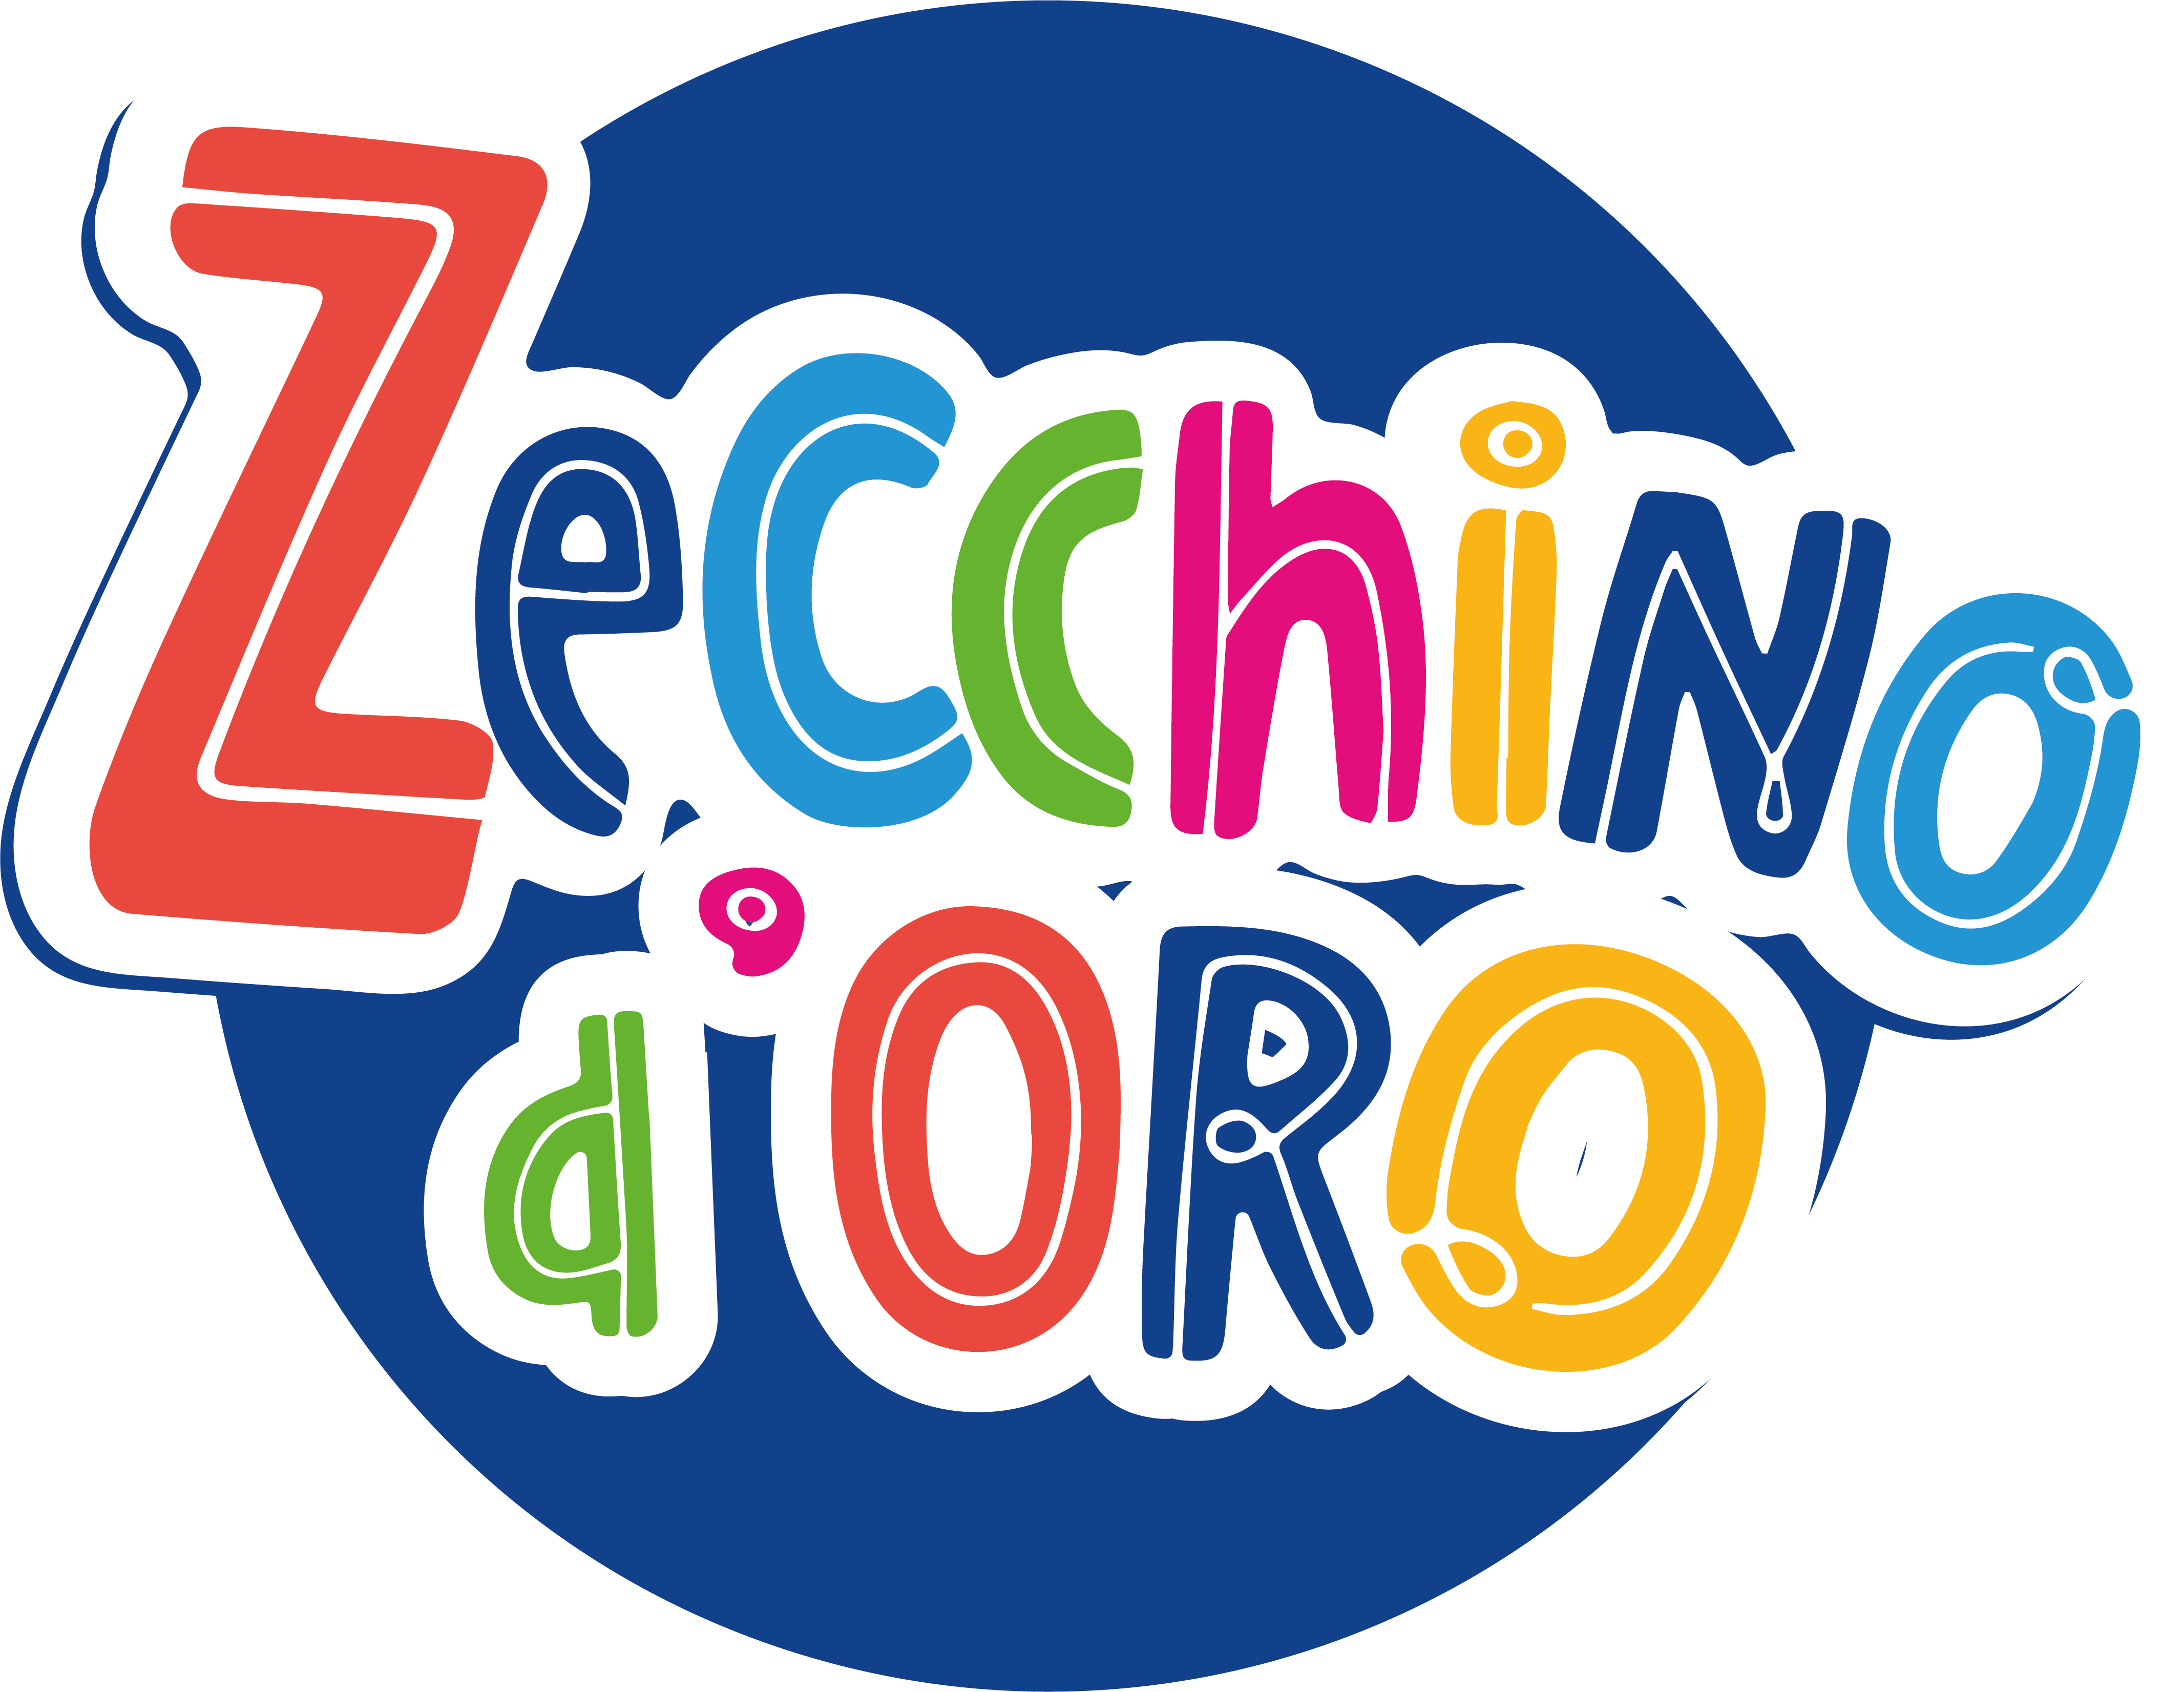 Logo Zecchino